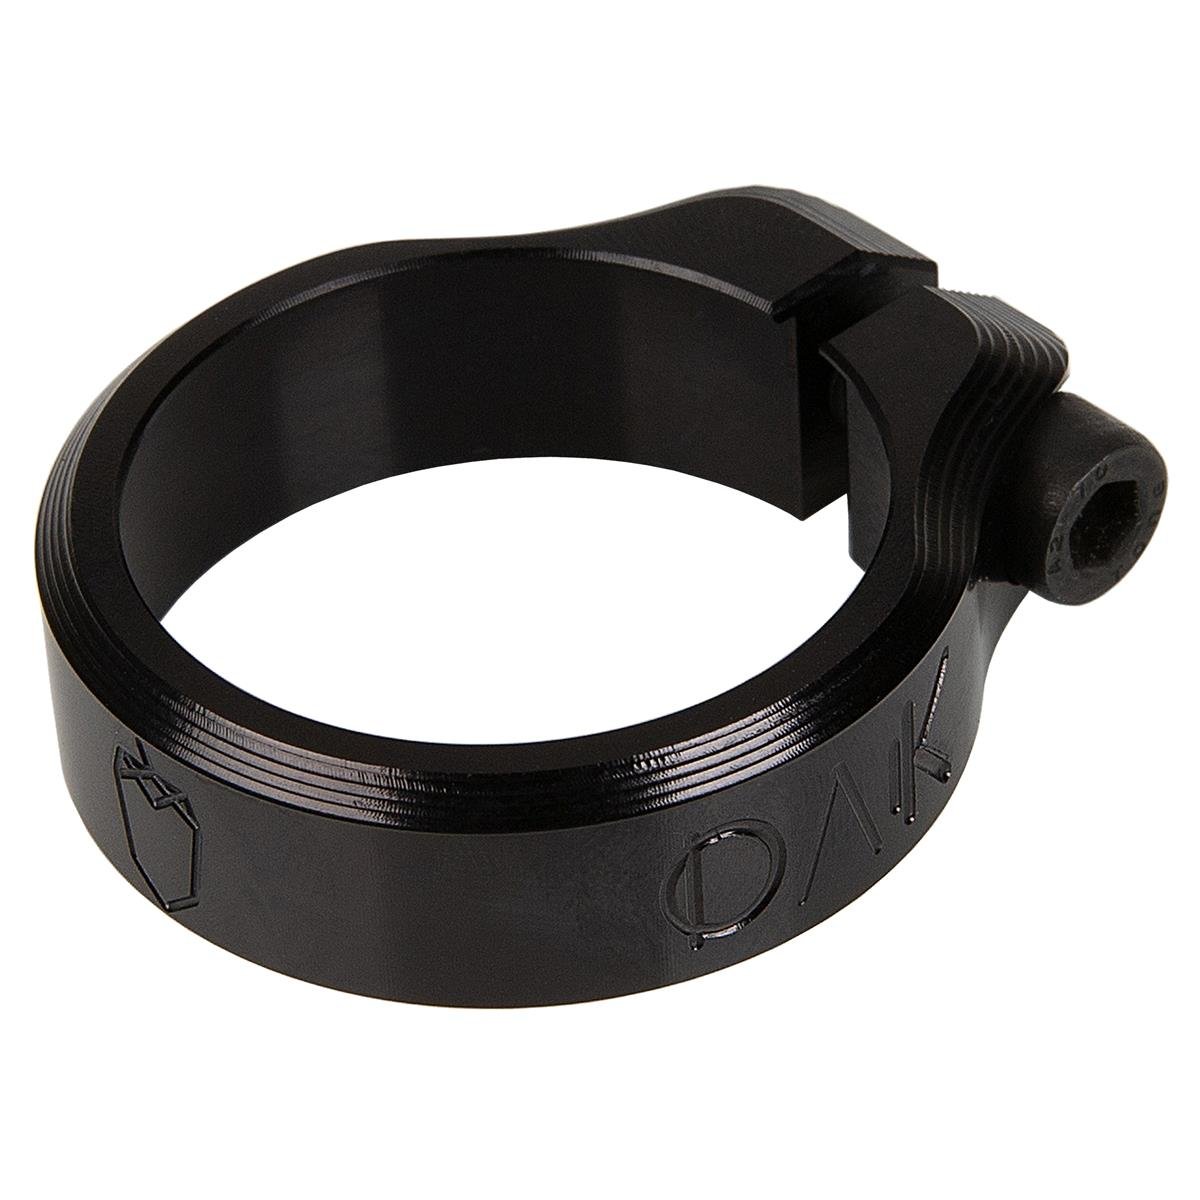 OAK Components Collier de Selle Orbit Noir, 34.9 mm / 36.4 mm / 38.6 mm